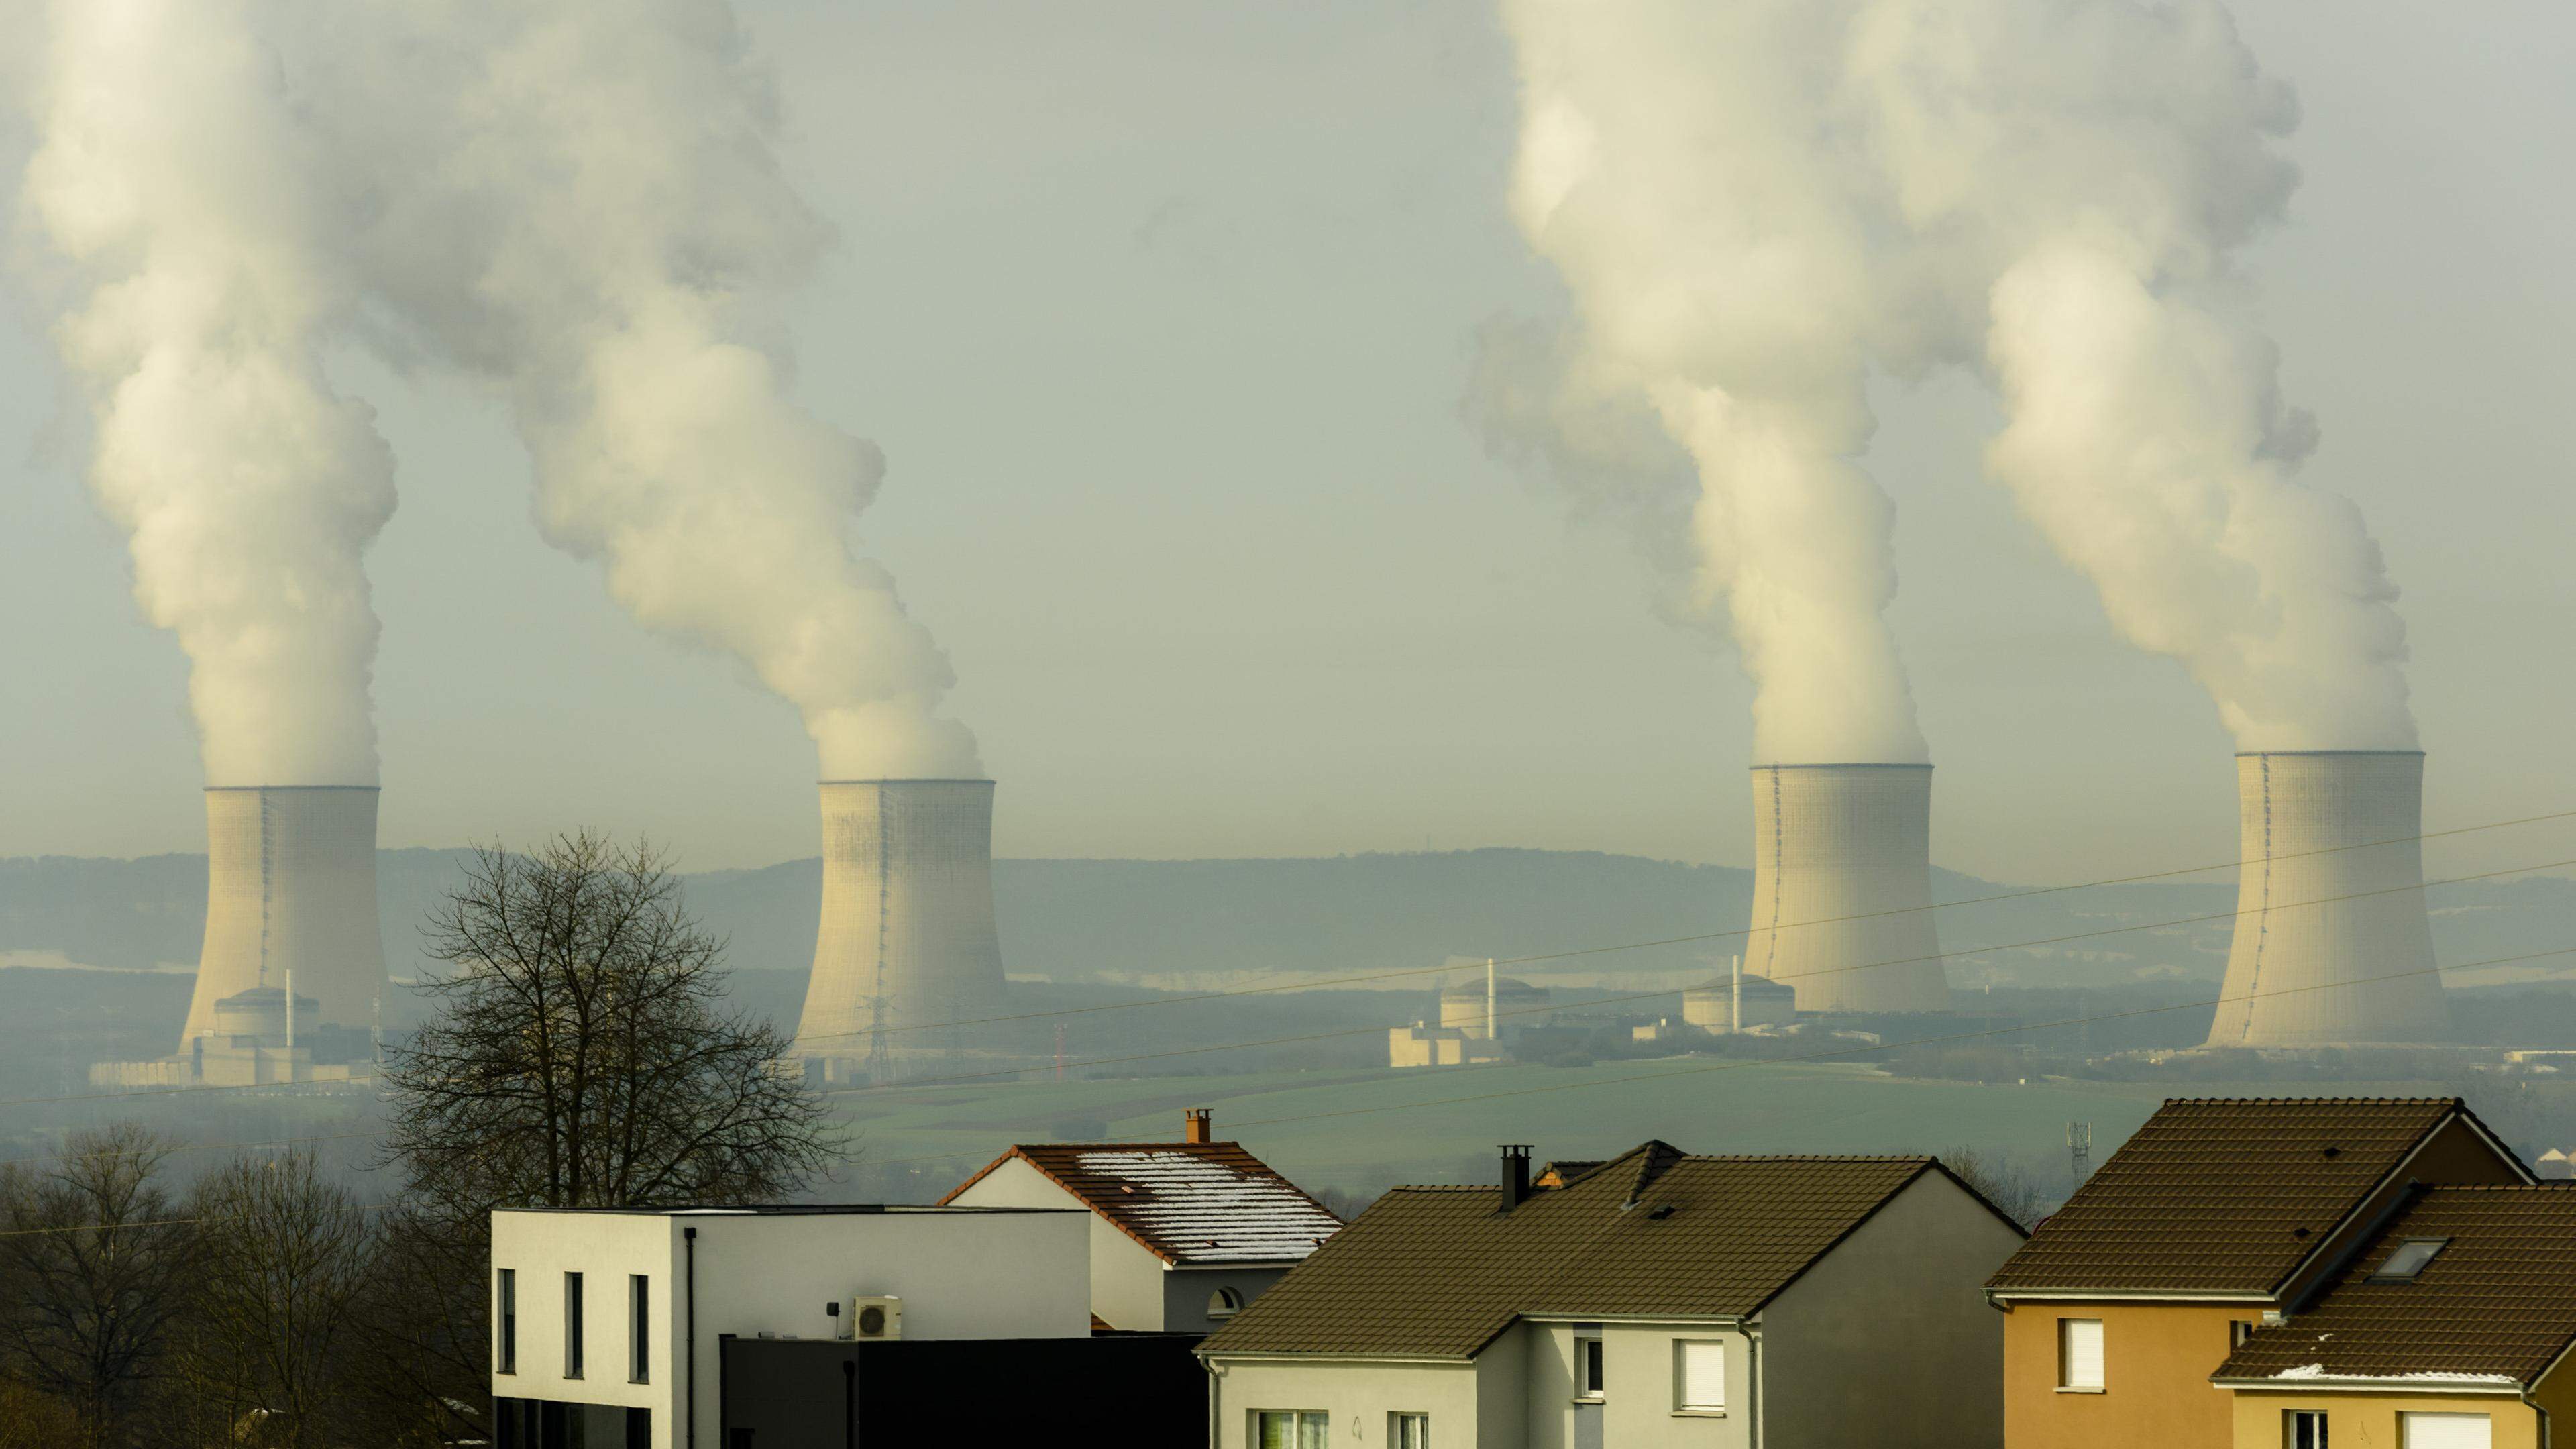 La centrale nucléaire de Cattenom est visible de loin. Greenpeace demande au gouvernement luxembourgeois de s’engager pour la fermeture de la centrale.